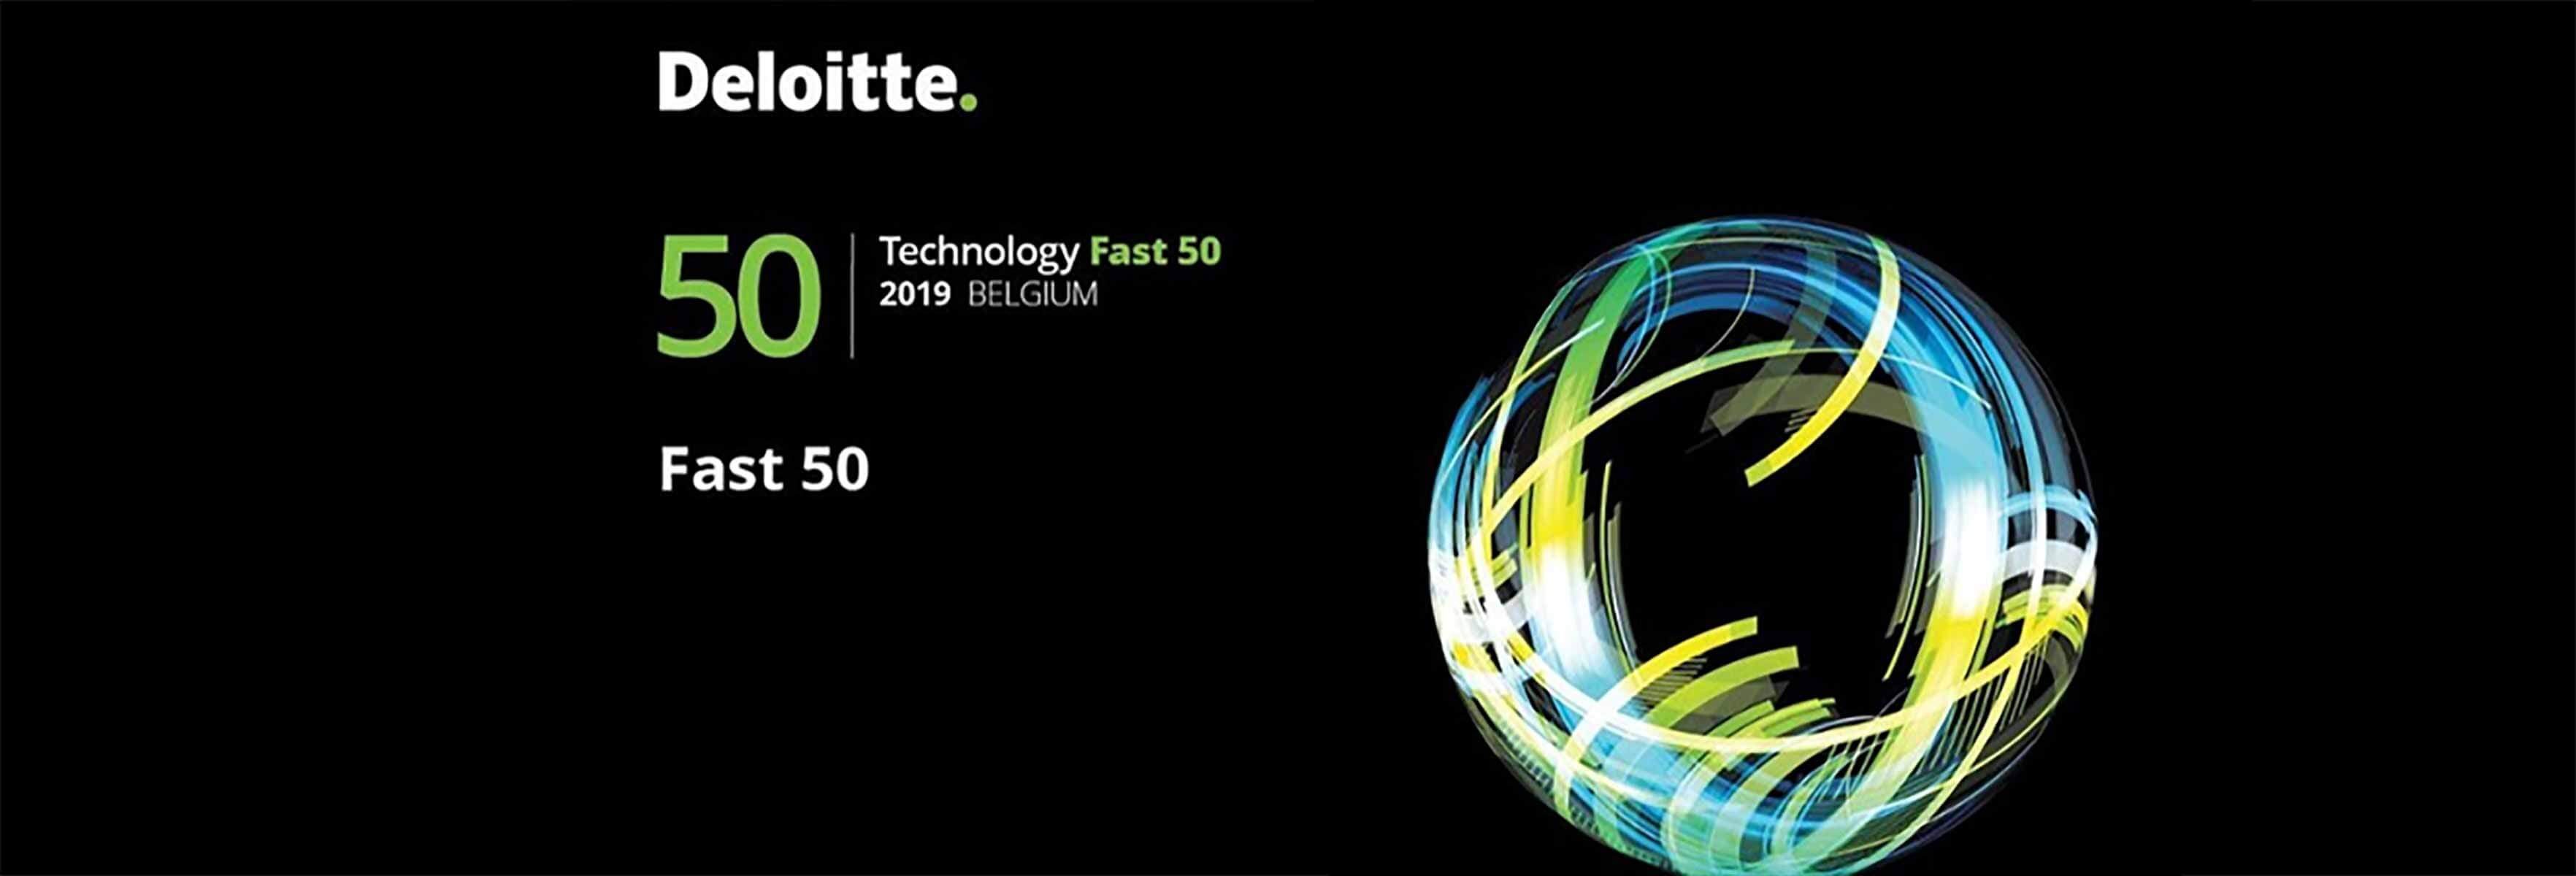 Deloitte 2019 Technology Fast 50 Belgium